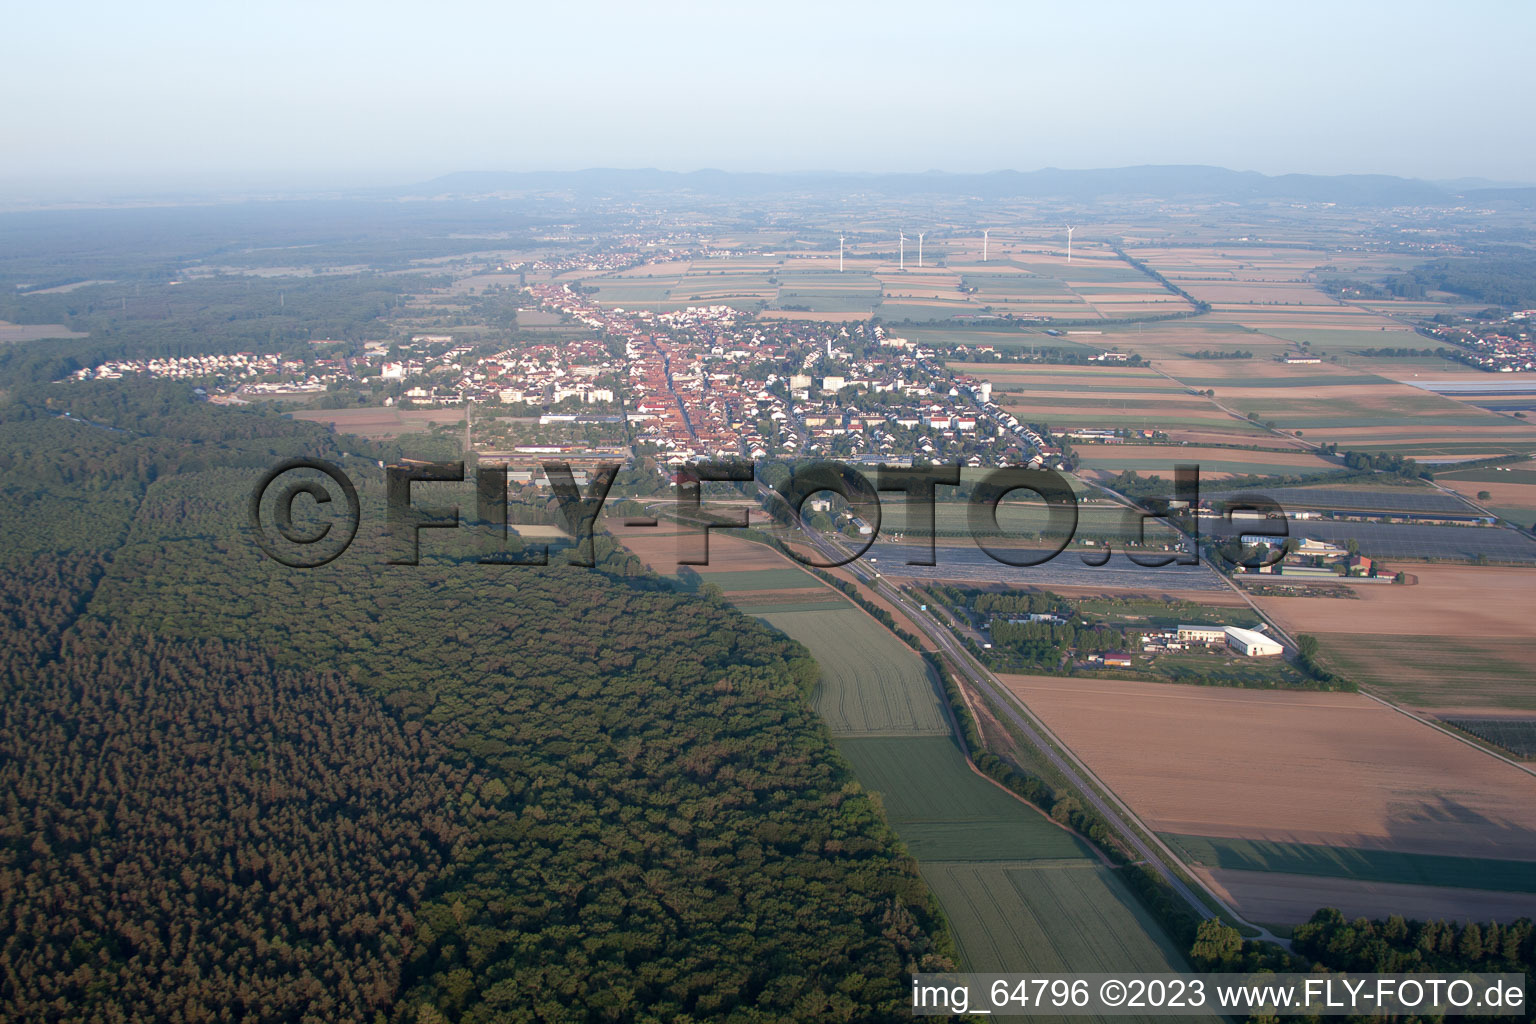 Vue aérienne de De l'est à Kandel dans le département Rhénanie-Palatinat, Allemagne